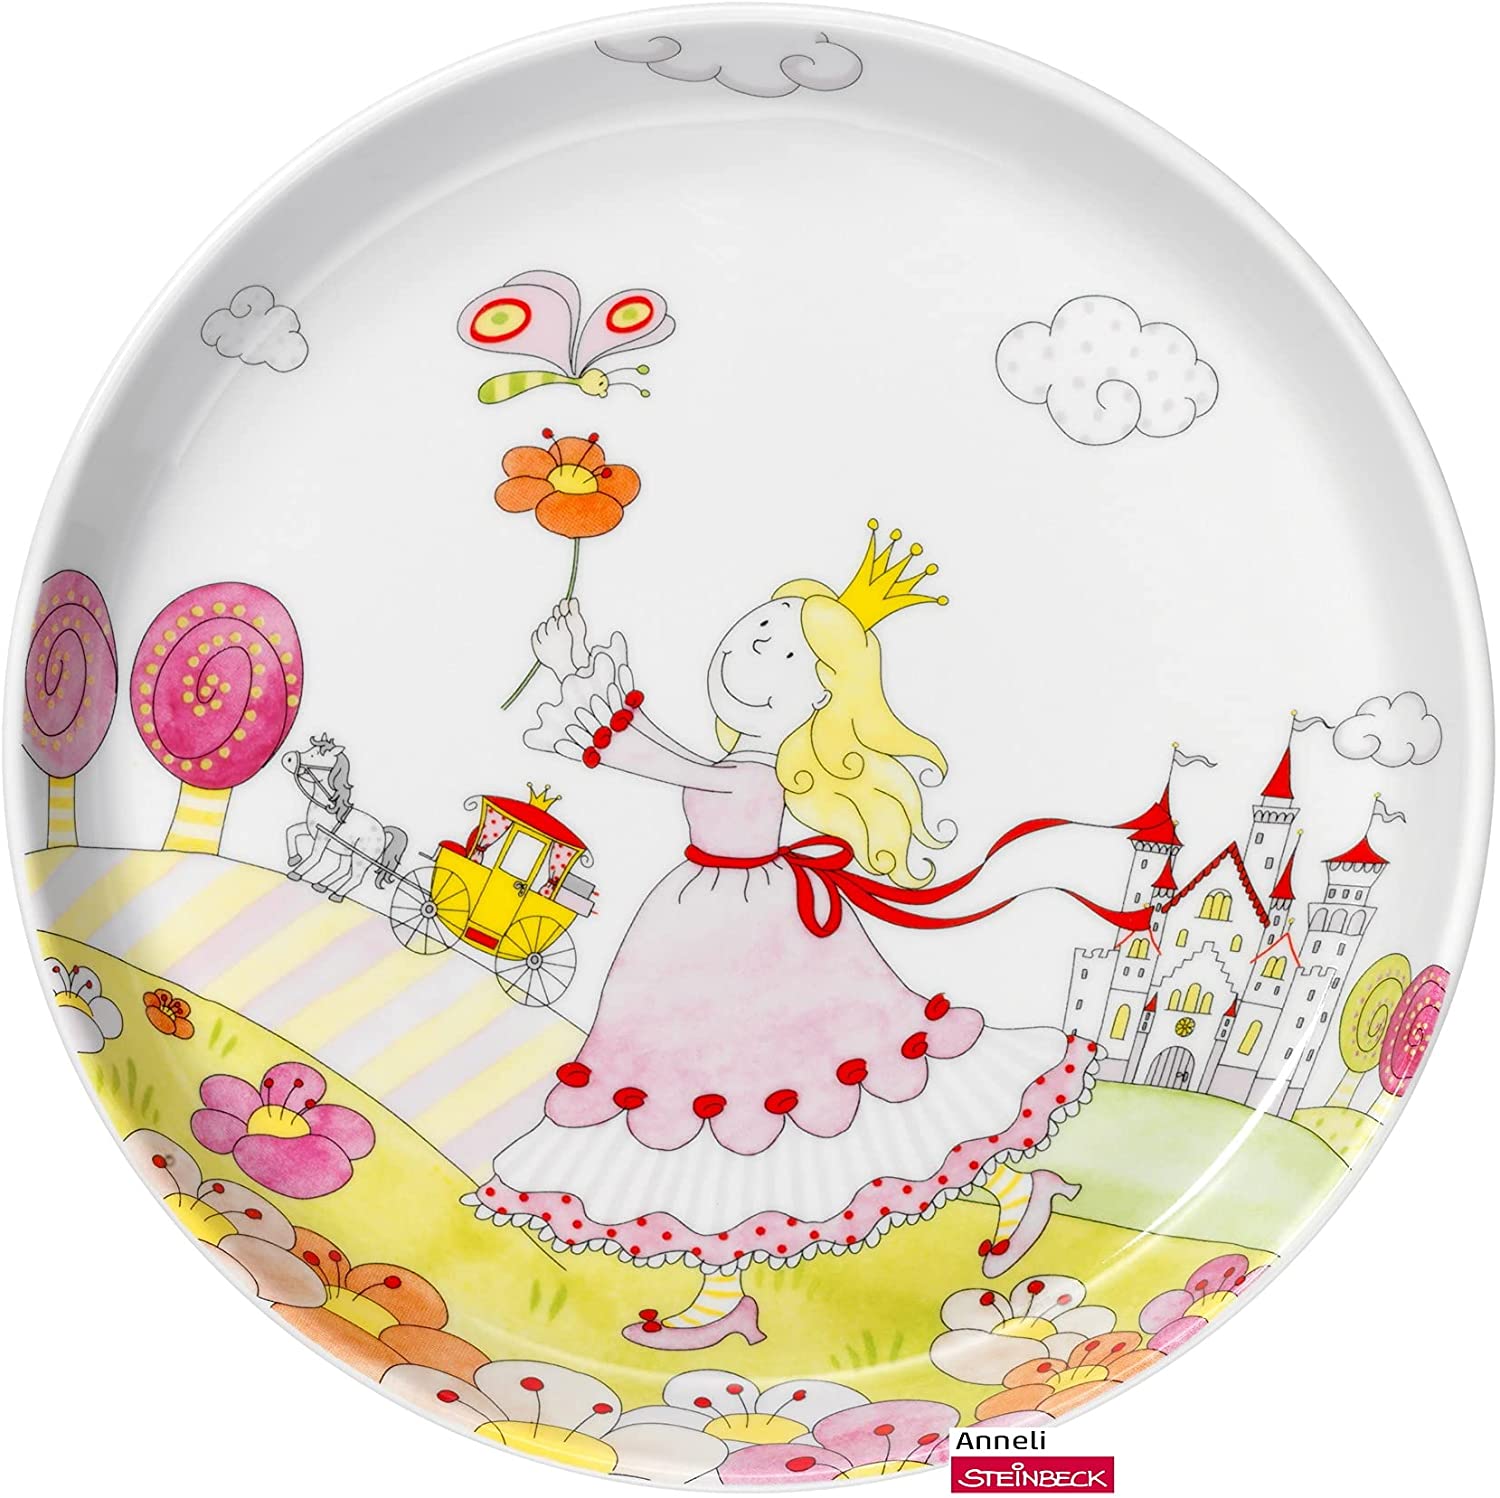 WMF Princess Anneli Children\'s Crockery Plate 19.0 cm, Porcelain, Dishwasher Safe, Colour and Food Safe